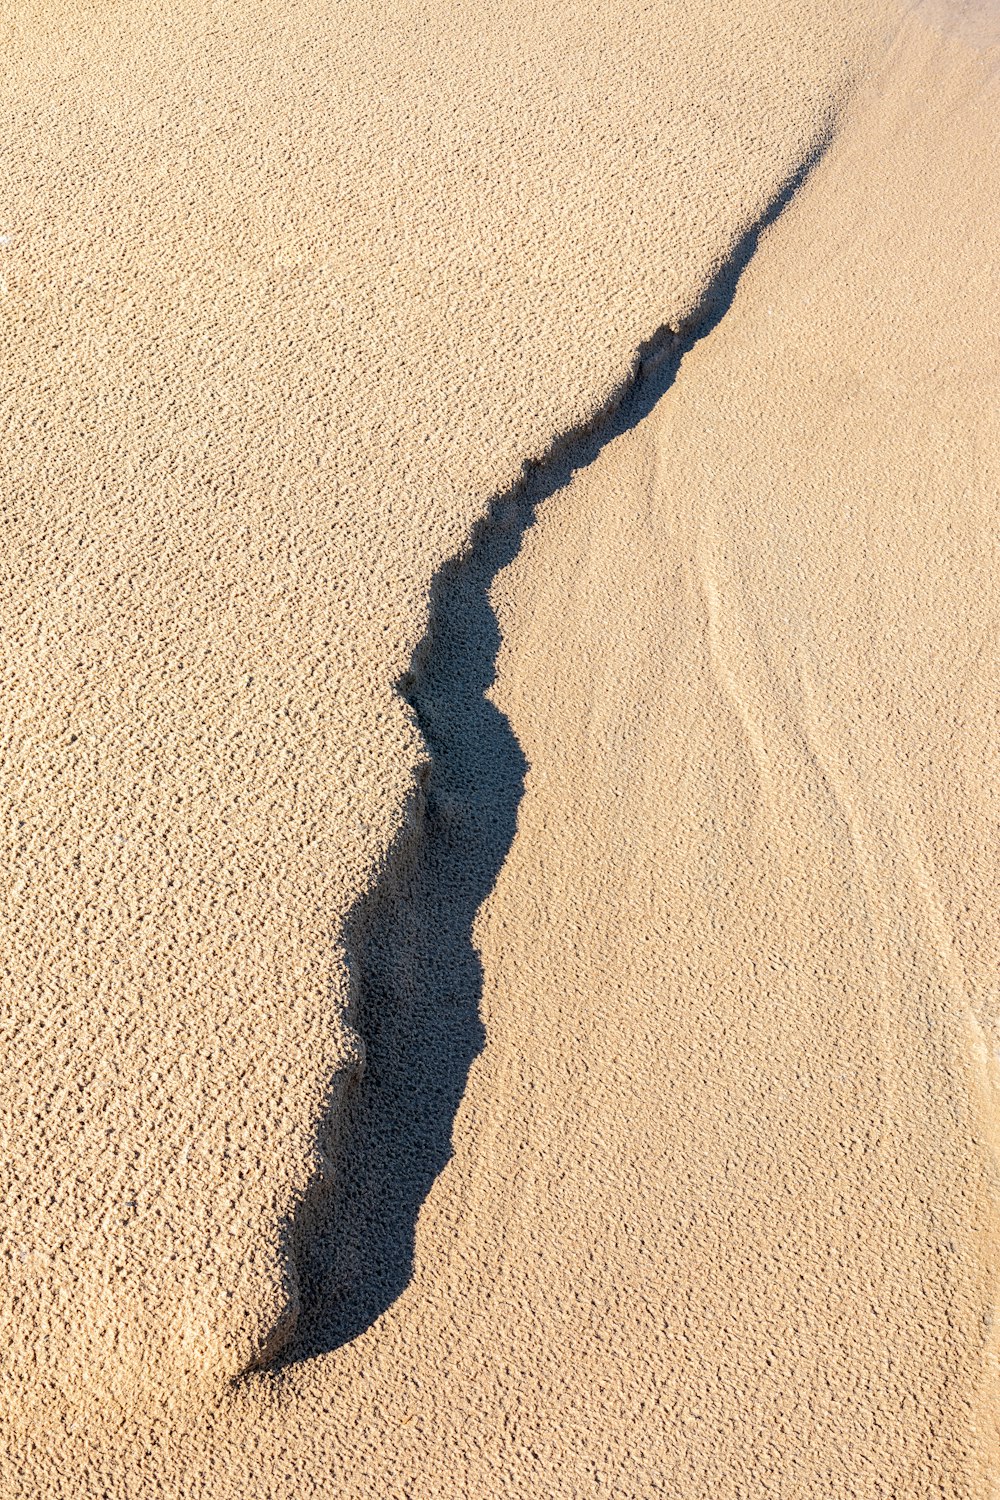 Sombra de persona sobre arena marrón